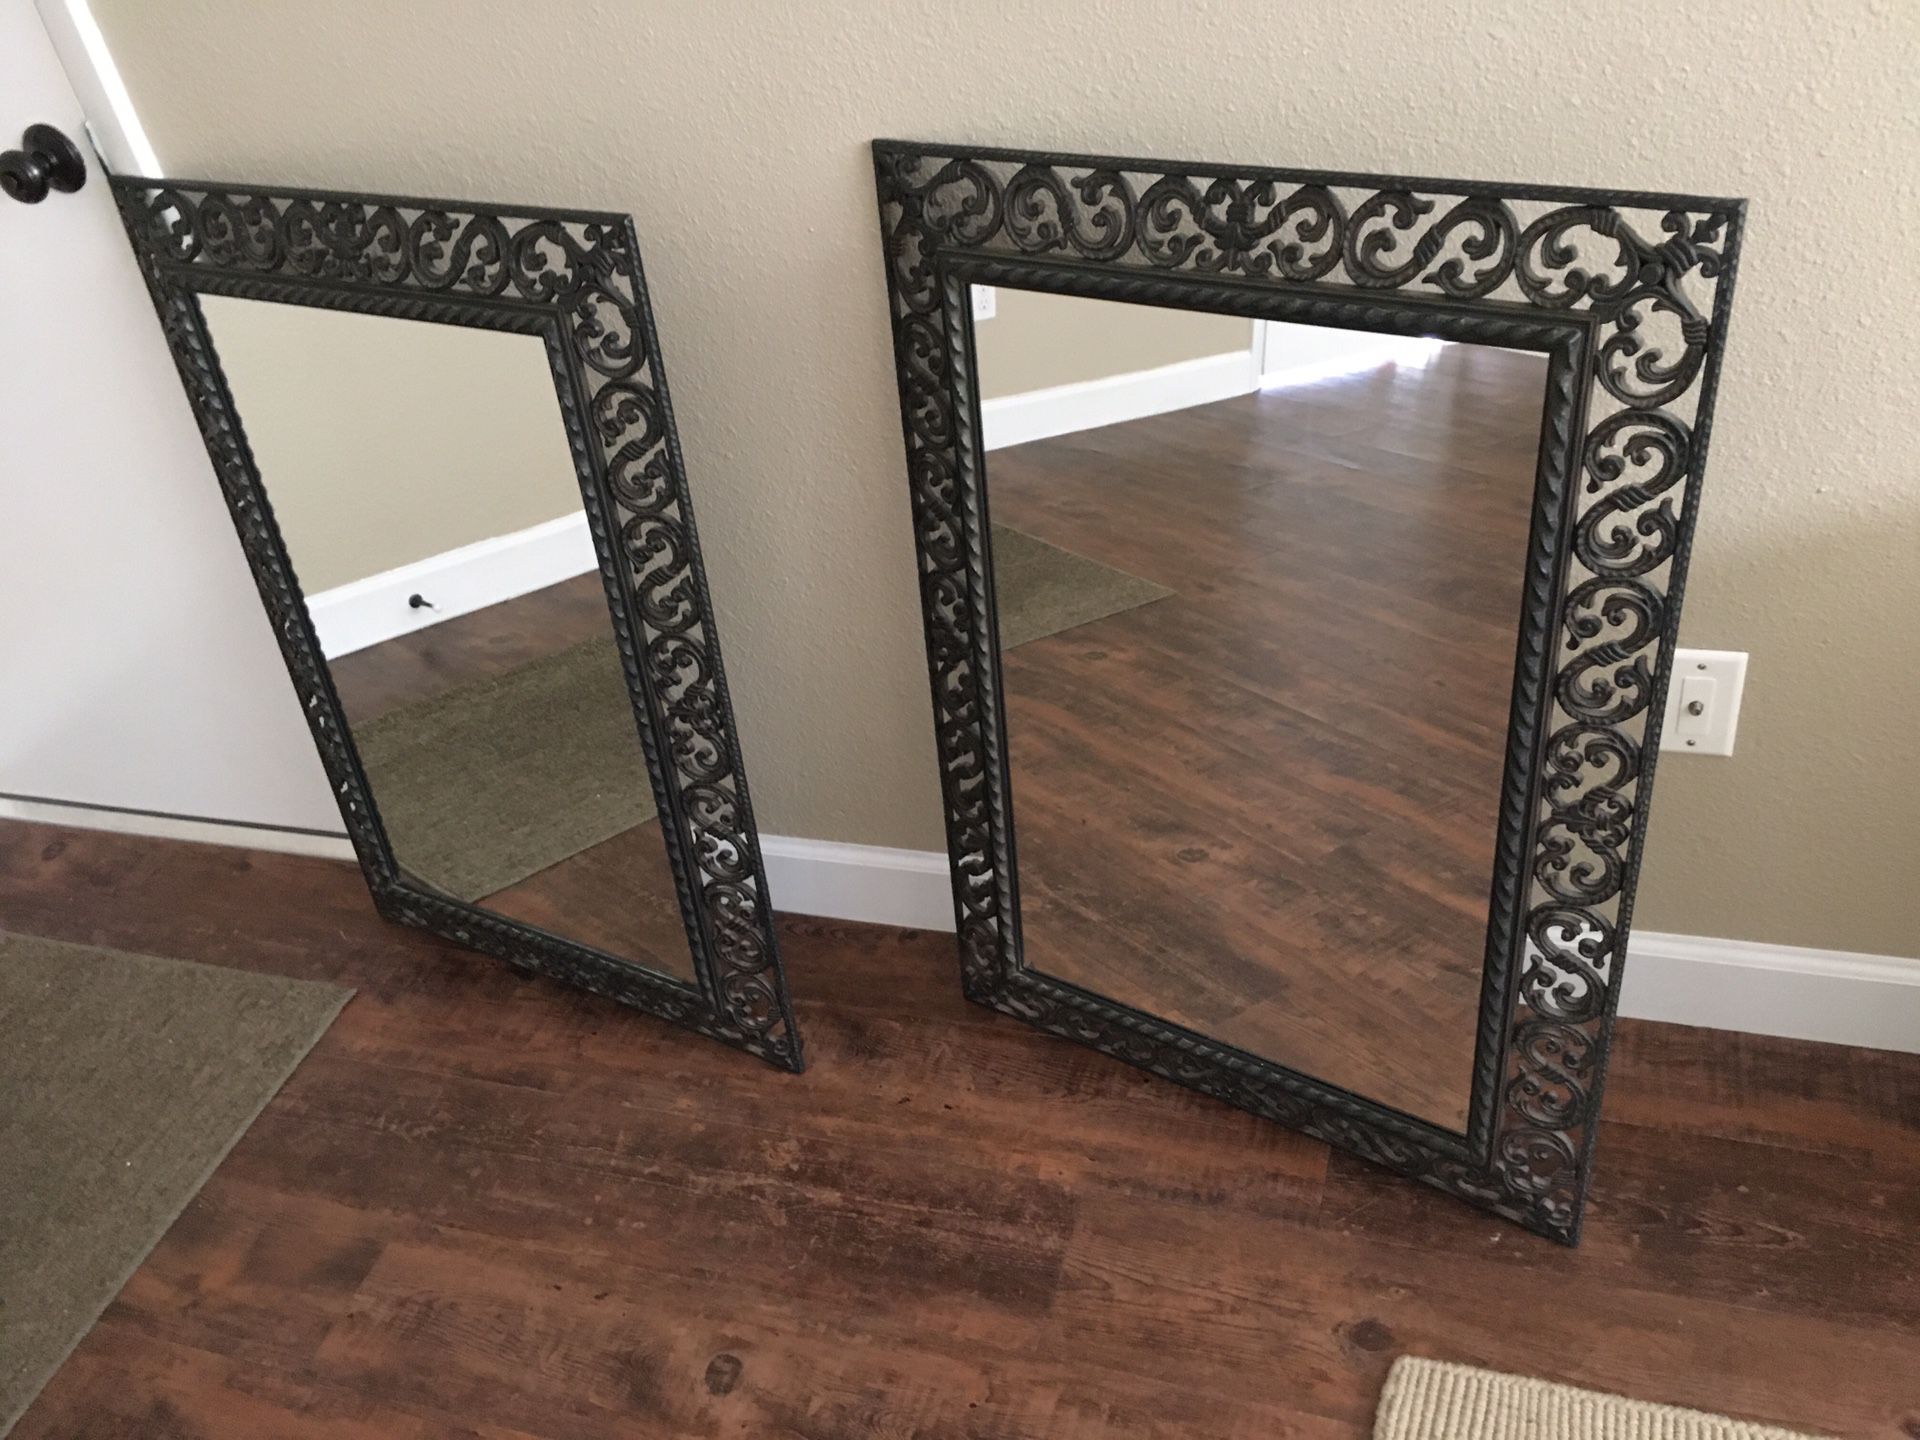 Pair of Mirrors